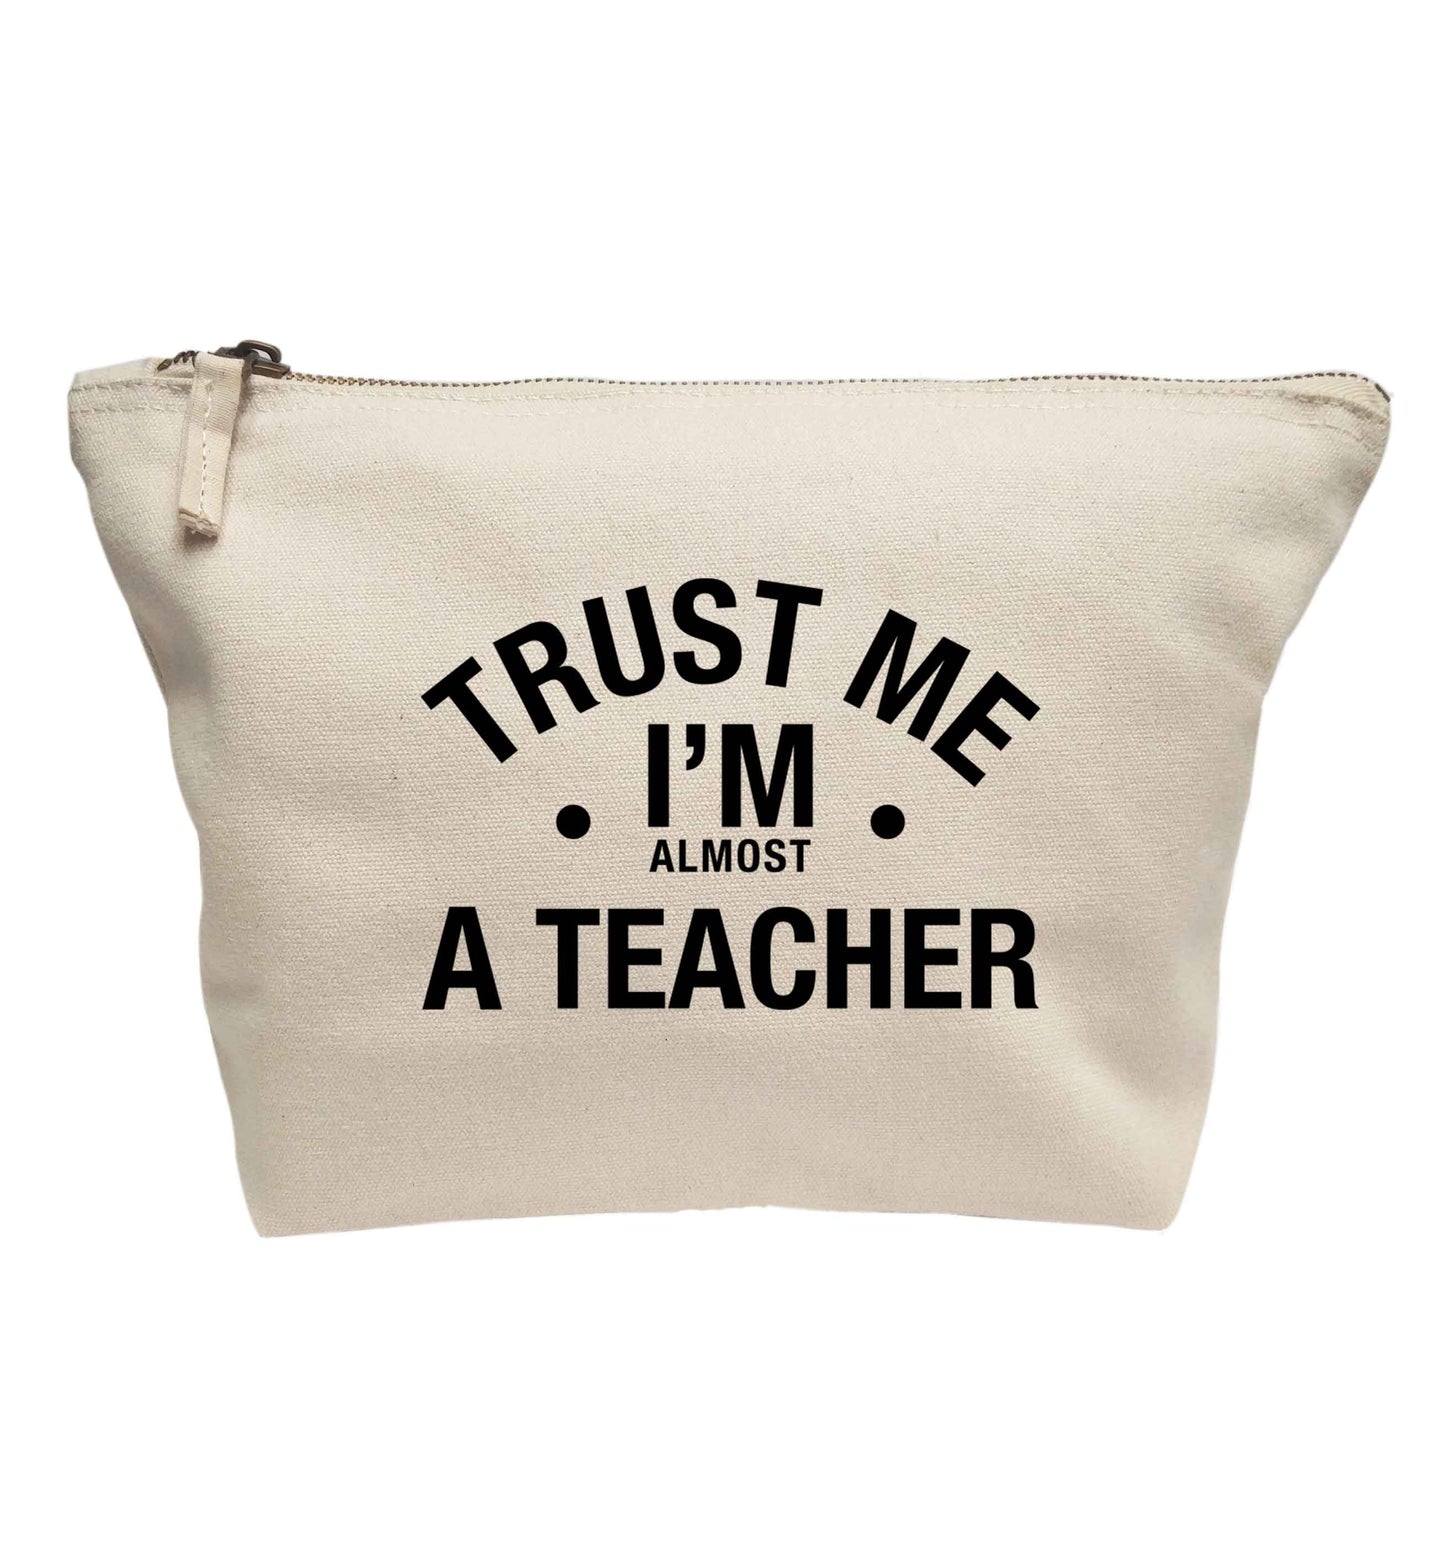 Trust me I'm almost a teacher | Makeup / wash bag